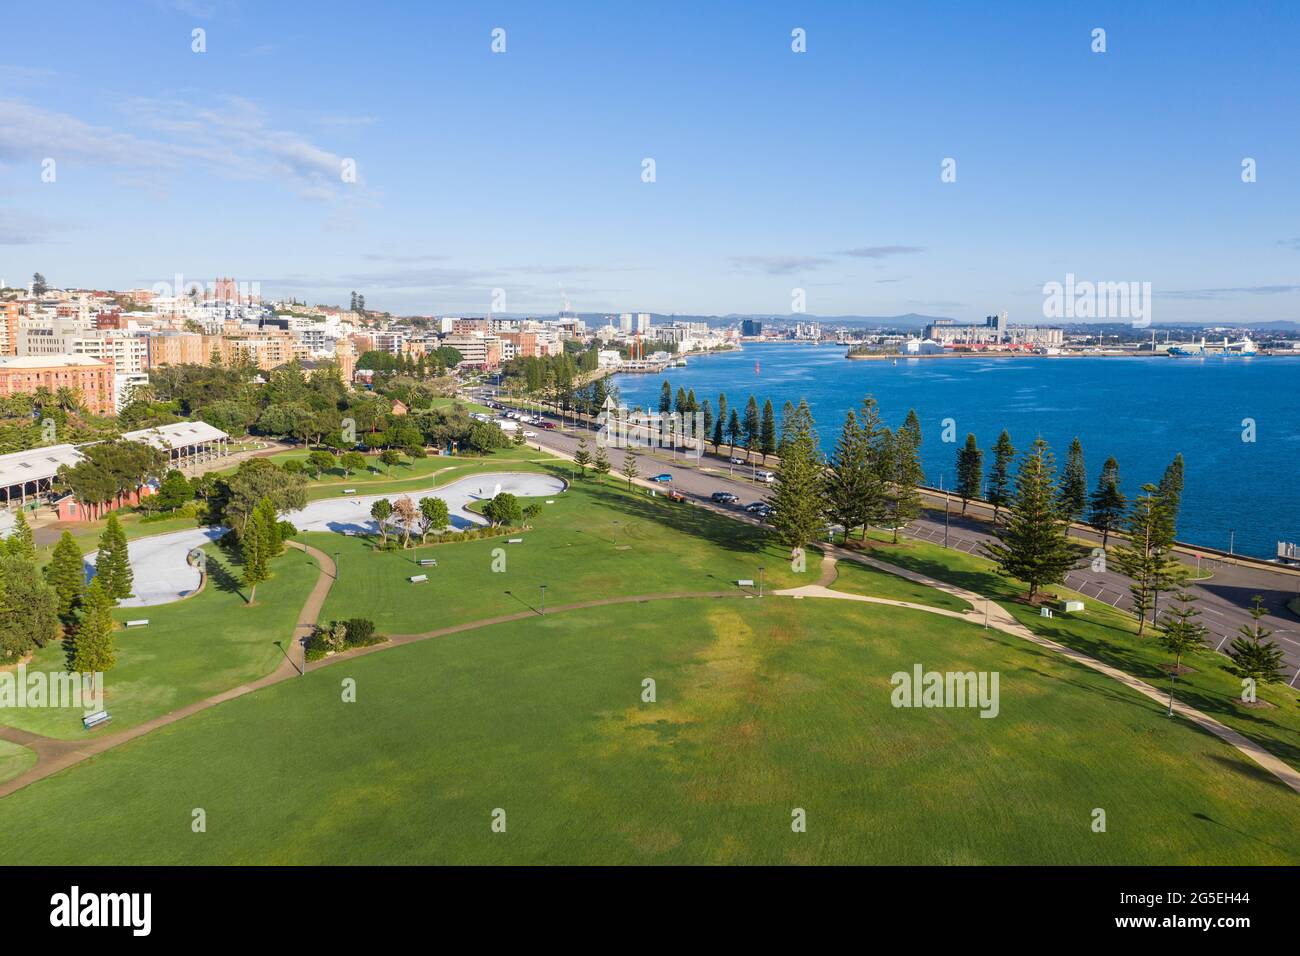 Vue aérienne du parc et du paysage urbain à côté du port de Newcastle et de la Hunter River à Newcastle - Nouvelle-Galles du Sud Australie Banque D'Images